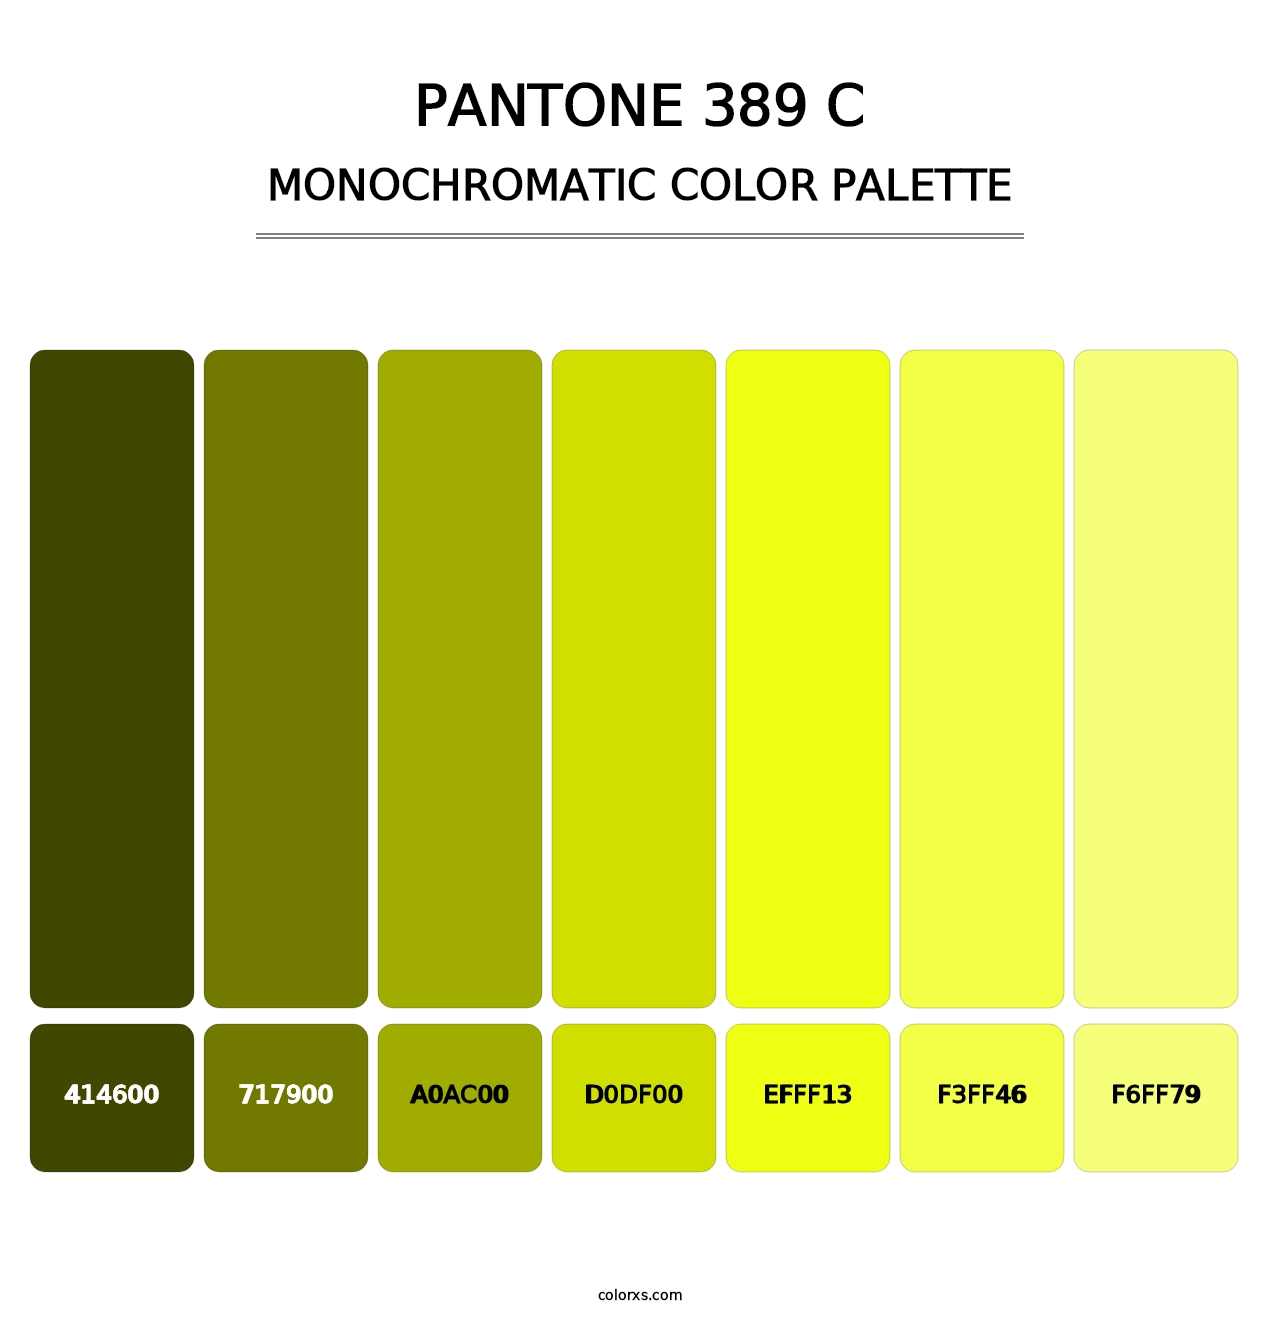 PANTONE 389 C - Monochromatic Color Palette